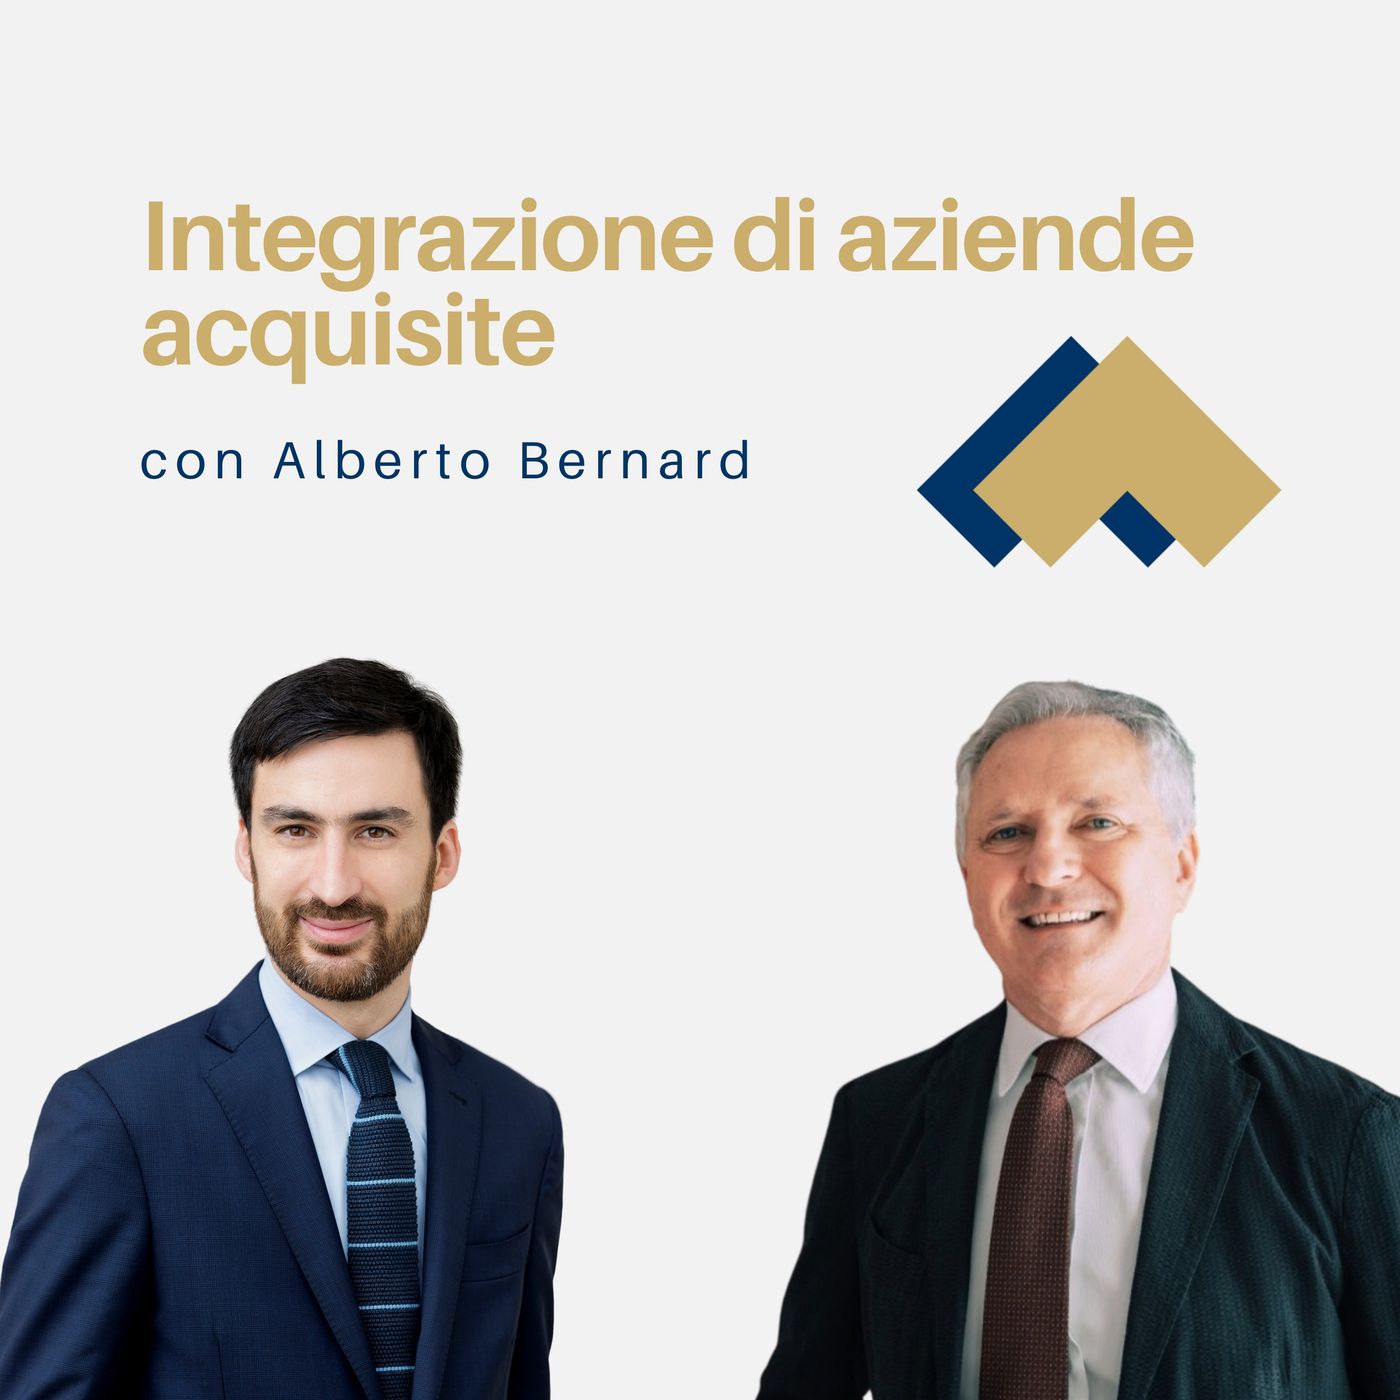 080 - Integrazione di aziende acquisite con Alberto Bernard